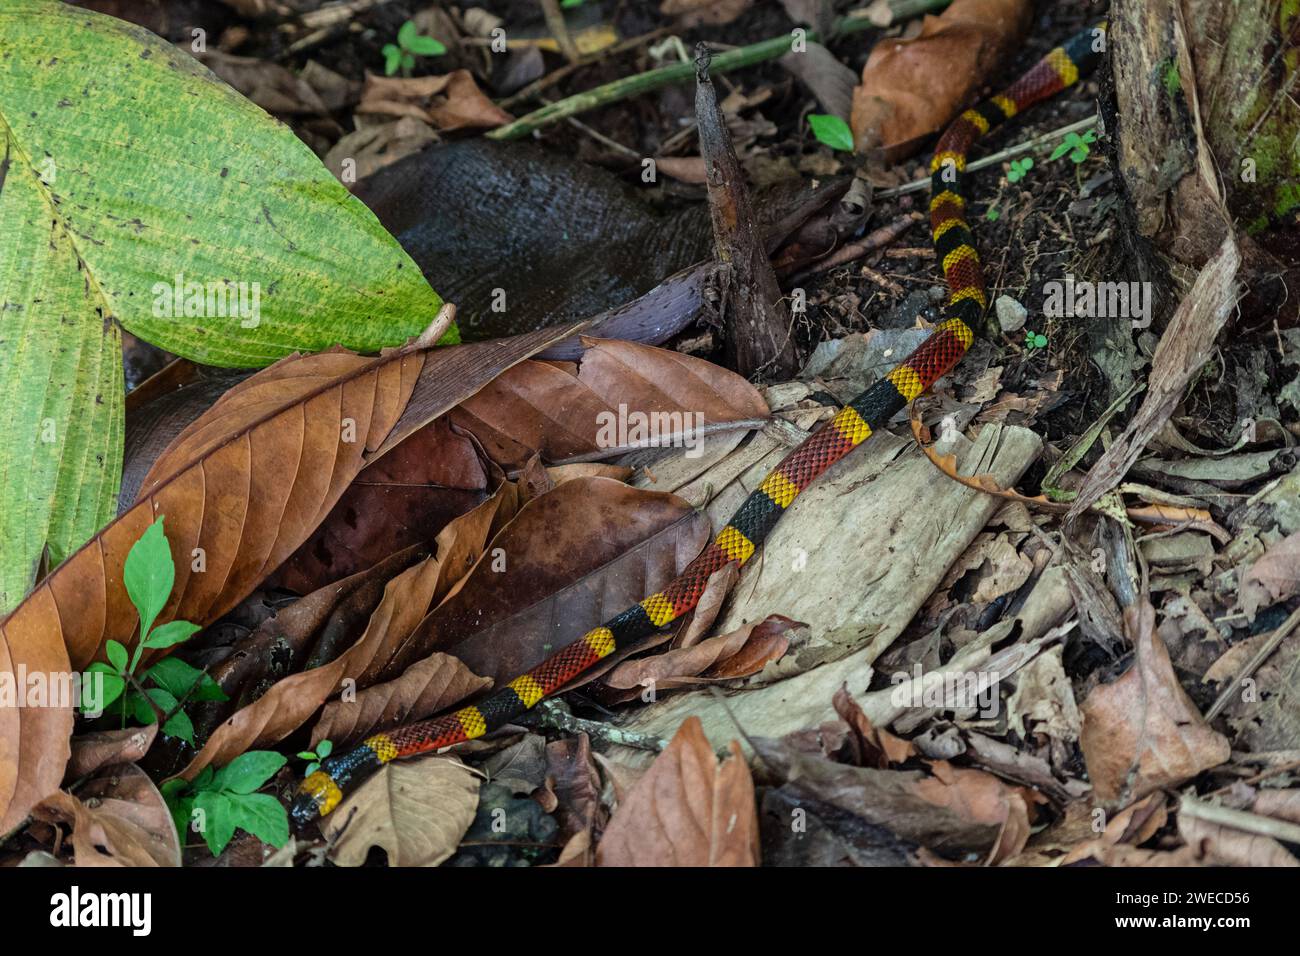 Incontro serpentino: Tra i bradipi in un parco costaricano, la natura svela i suoi segreti mentre un vivace serpente corallino attraversa con grazia il nostro percorso Foto Stock